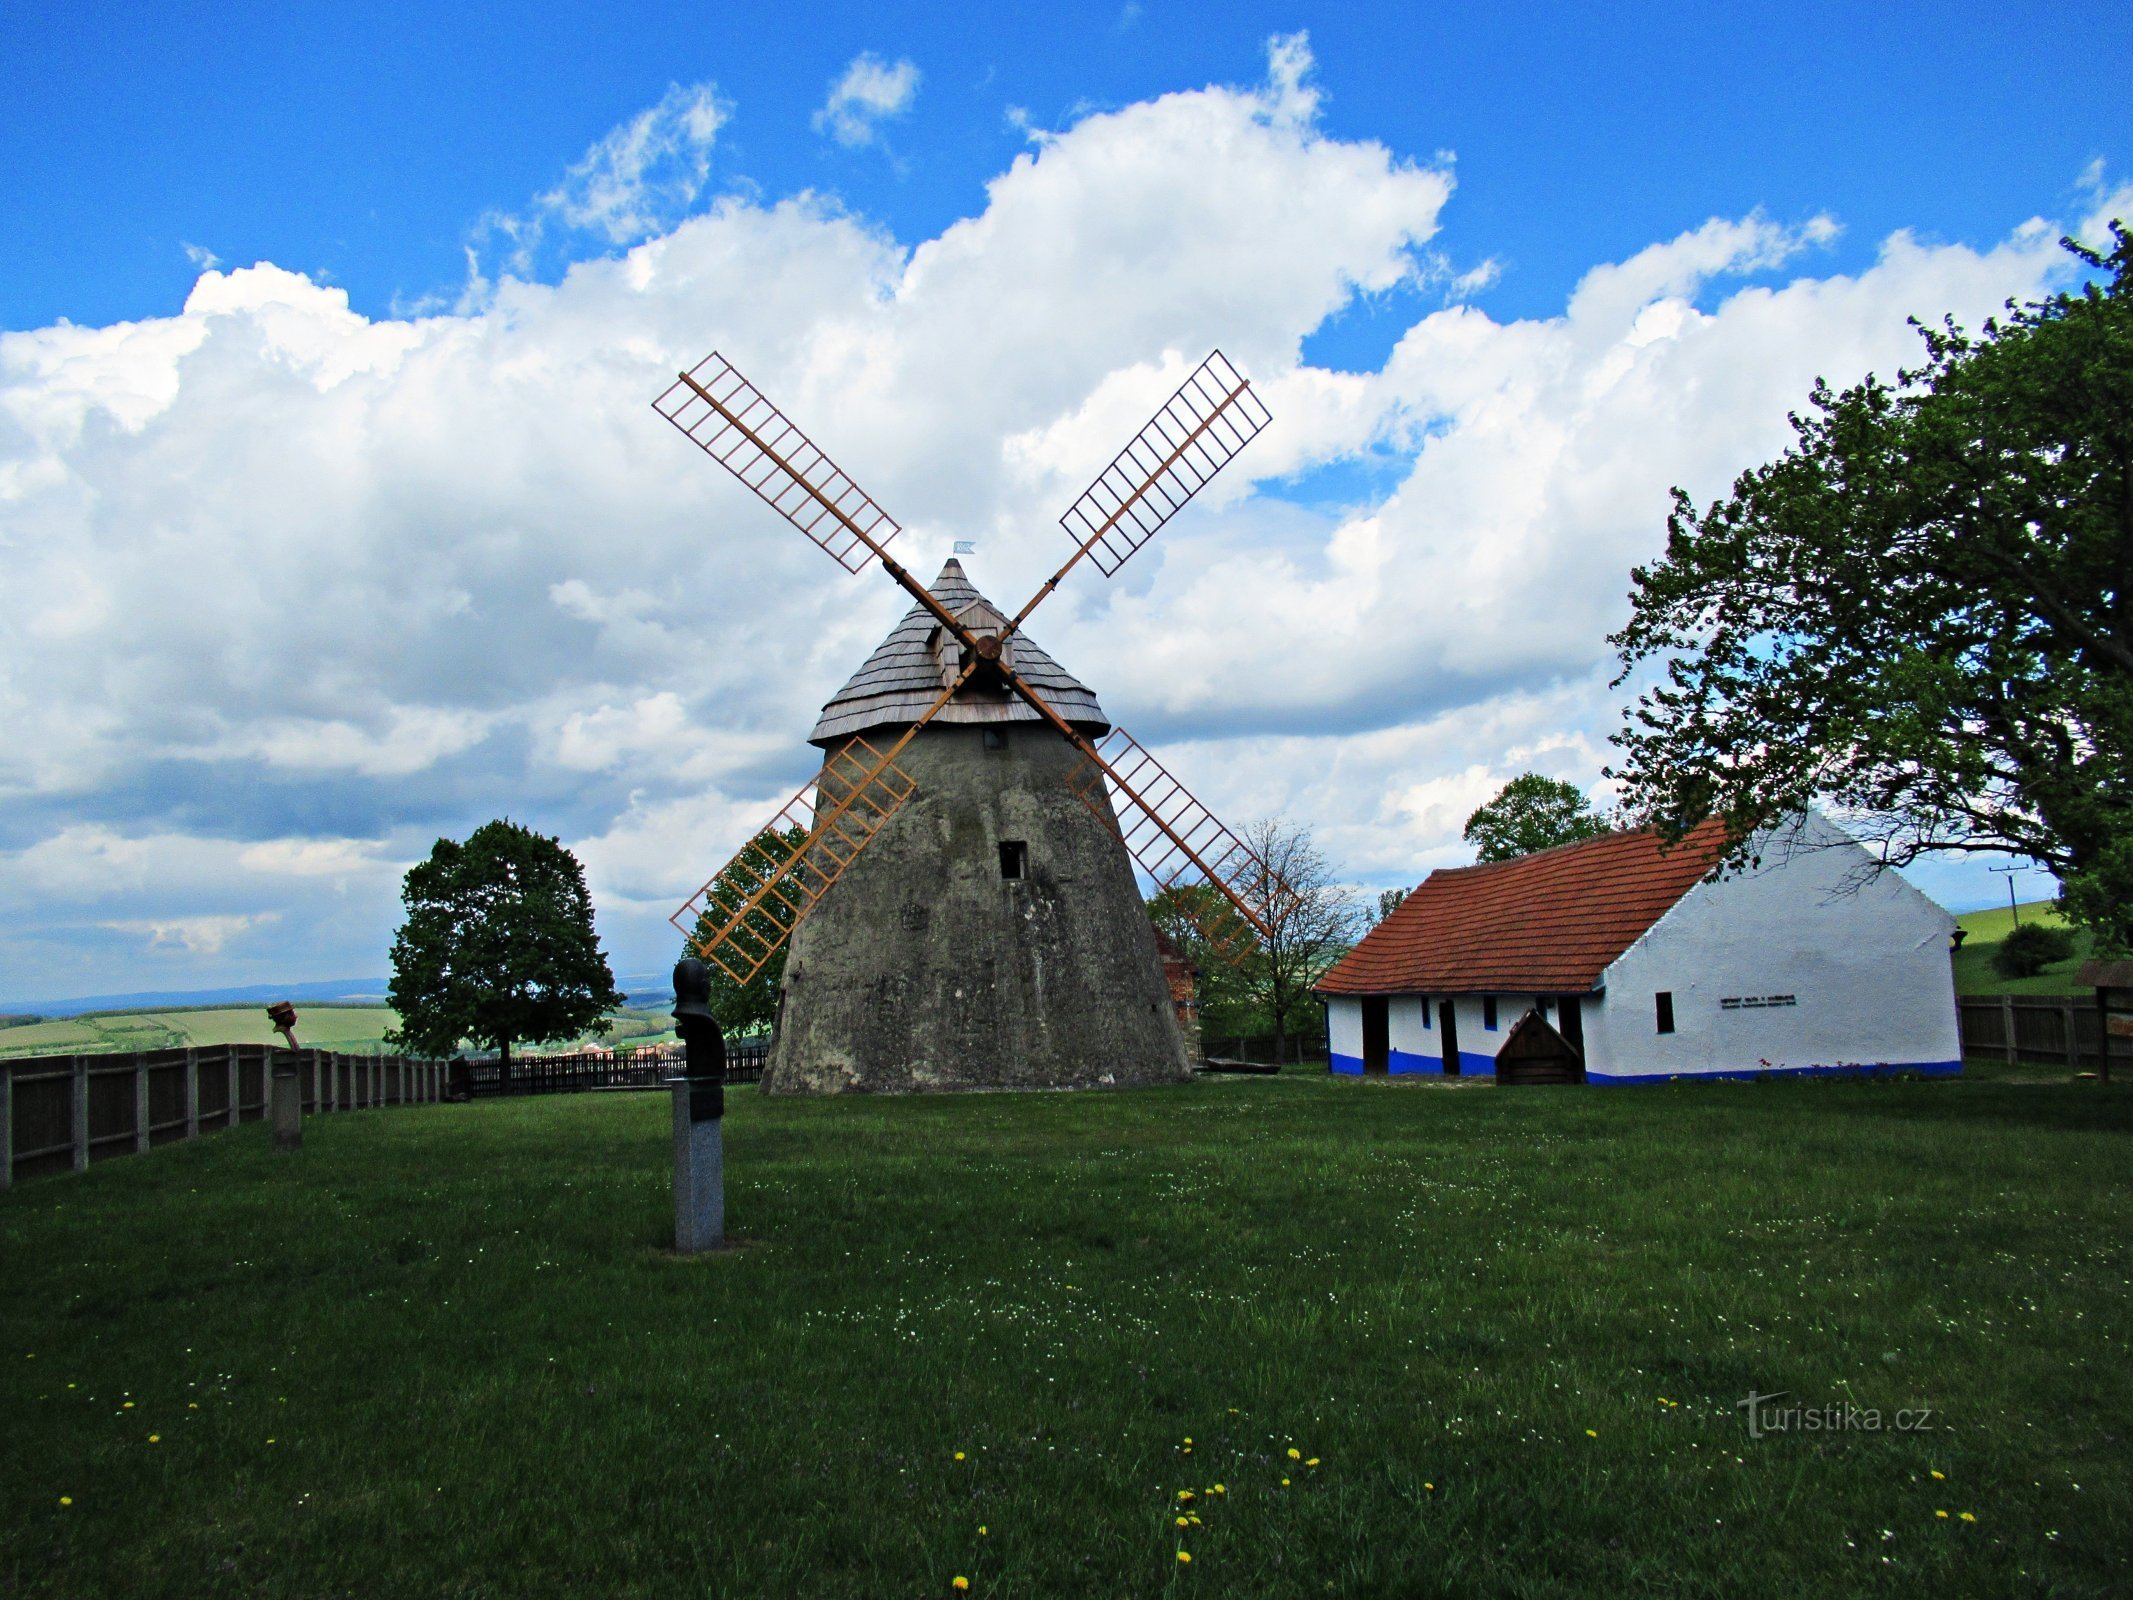 Das Areal der Windmühle oberhalb des Dorfes Kuželov in Mährische Slowakei